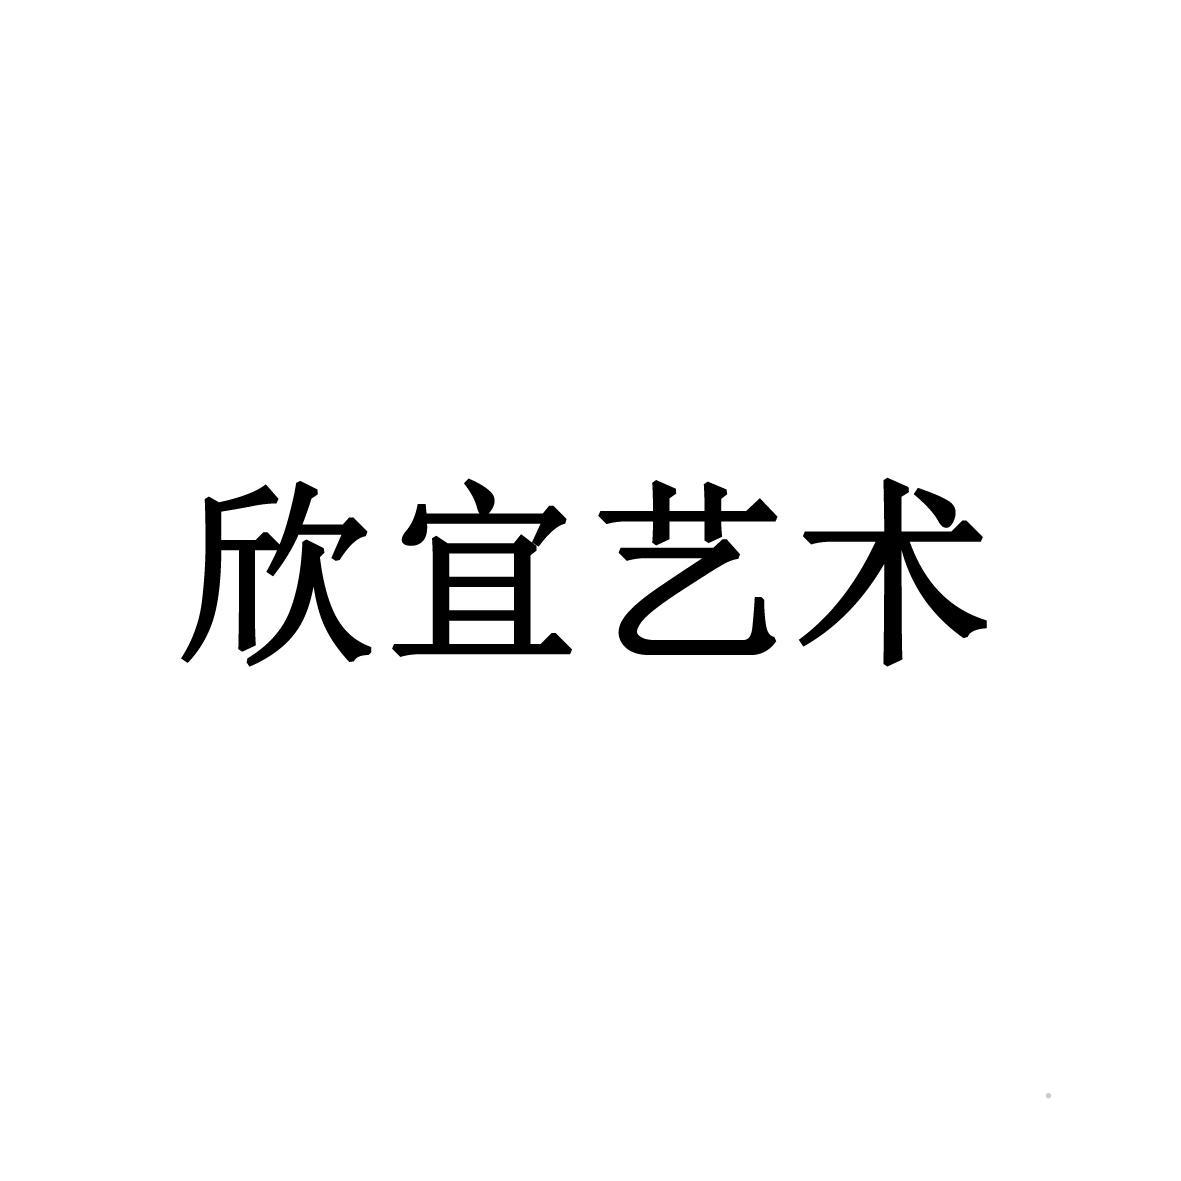 欣宜艺术logo